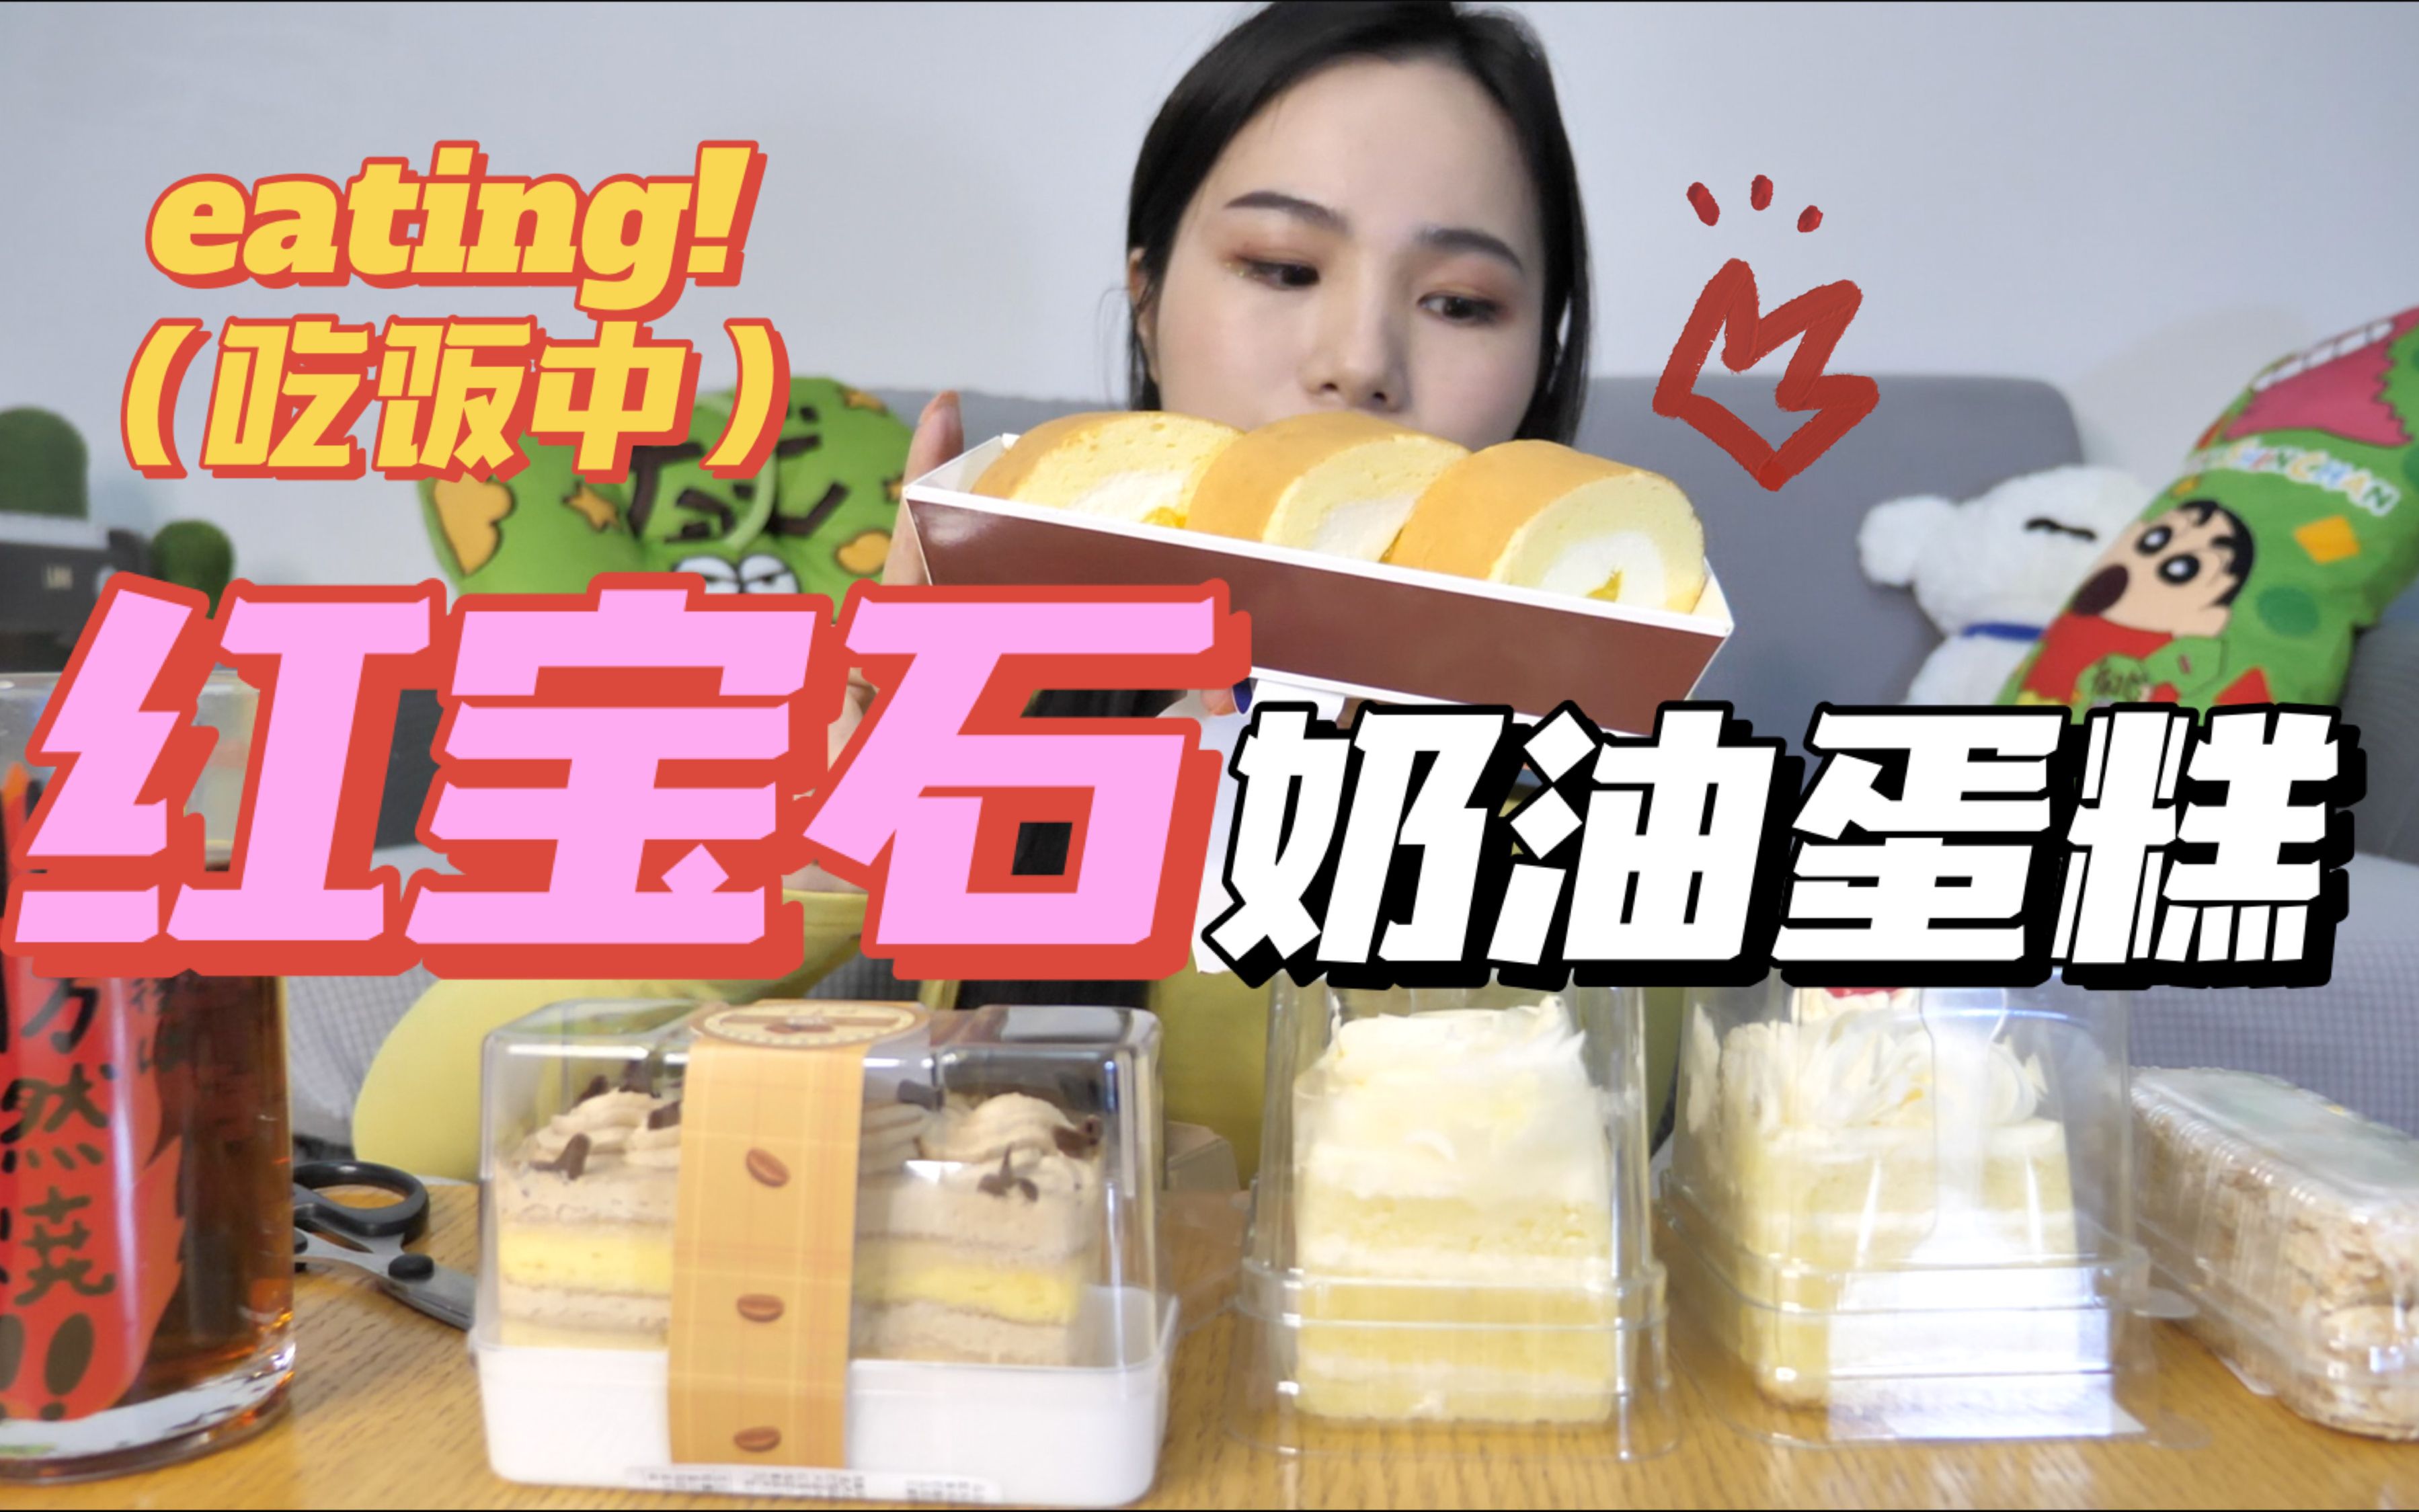 [上海美食]红宝石奶油蛋糕~ 分享一个我最喜欢的蛋糕给你们!! 就是气气的美食vlog